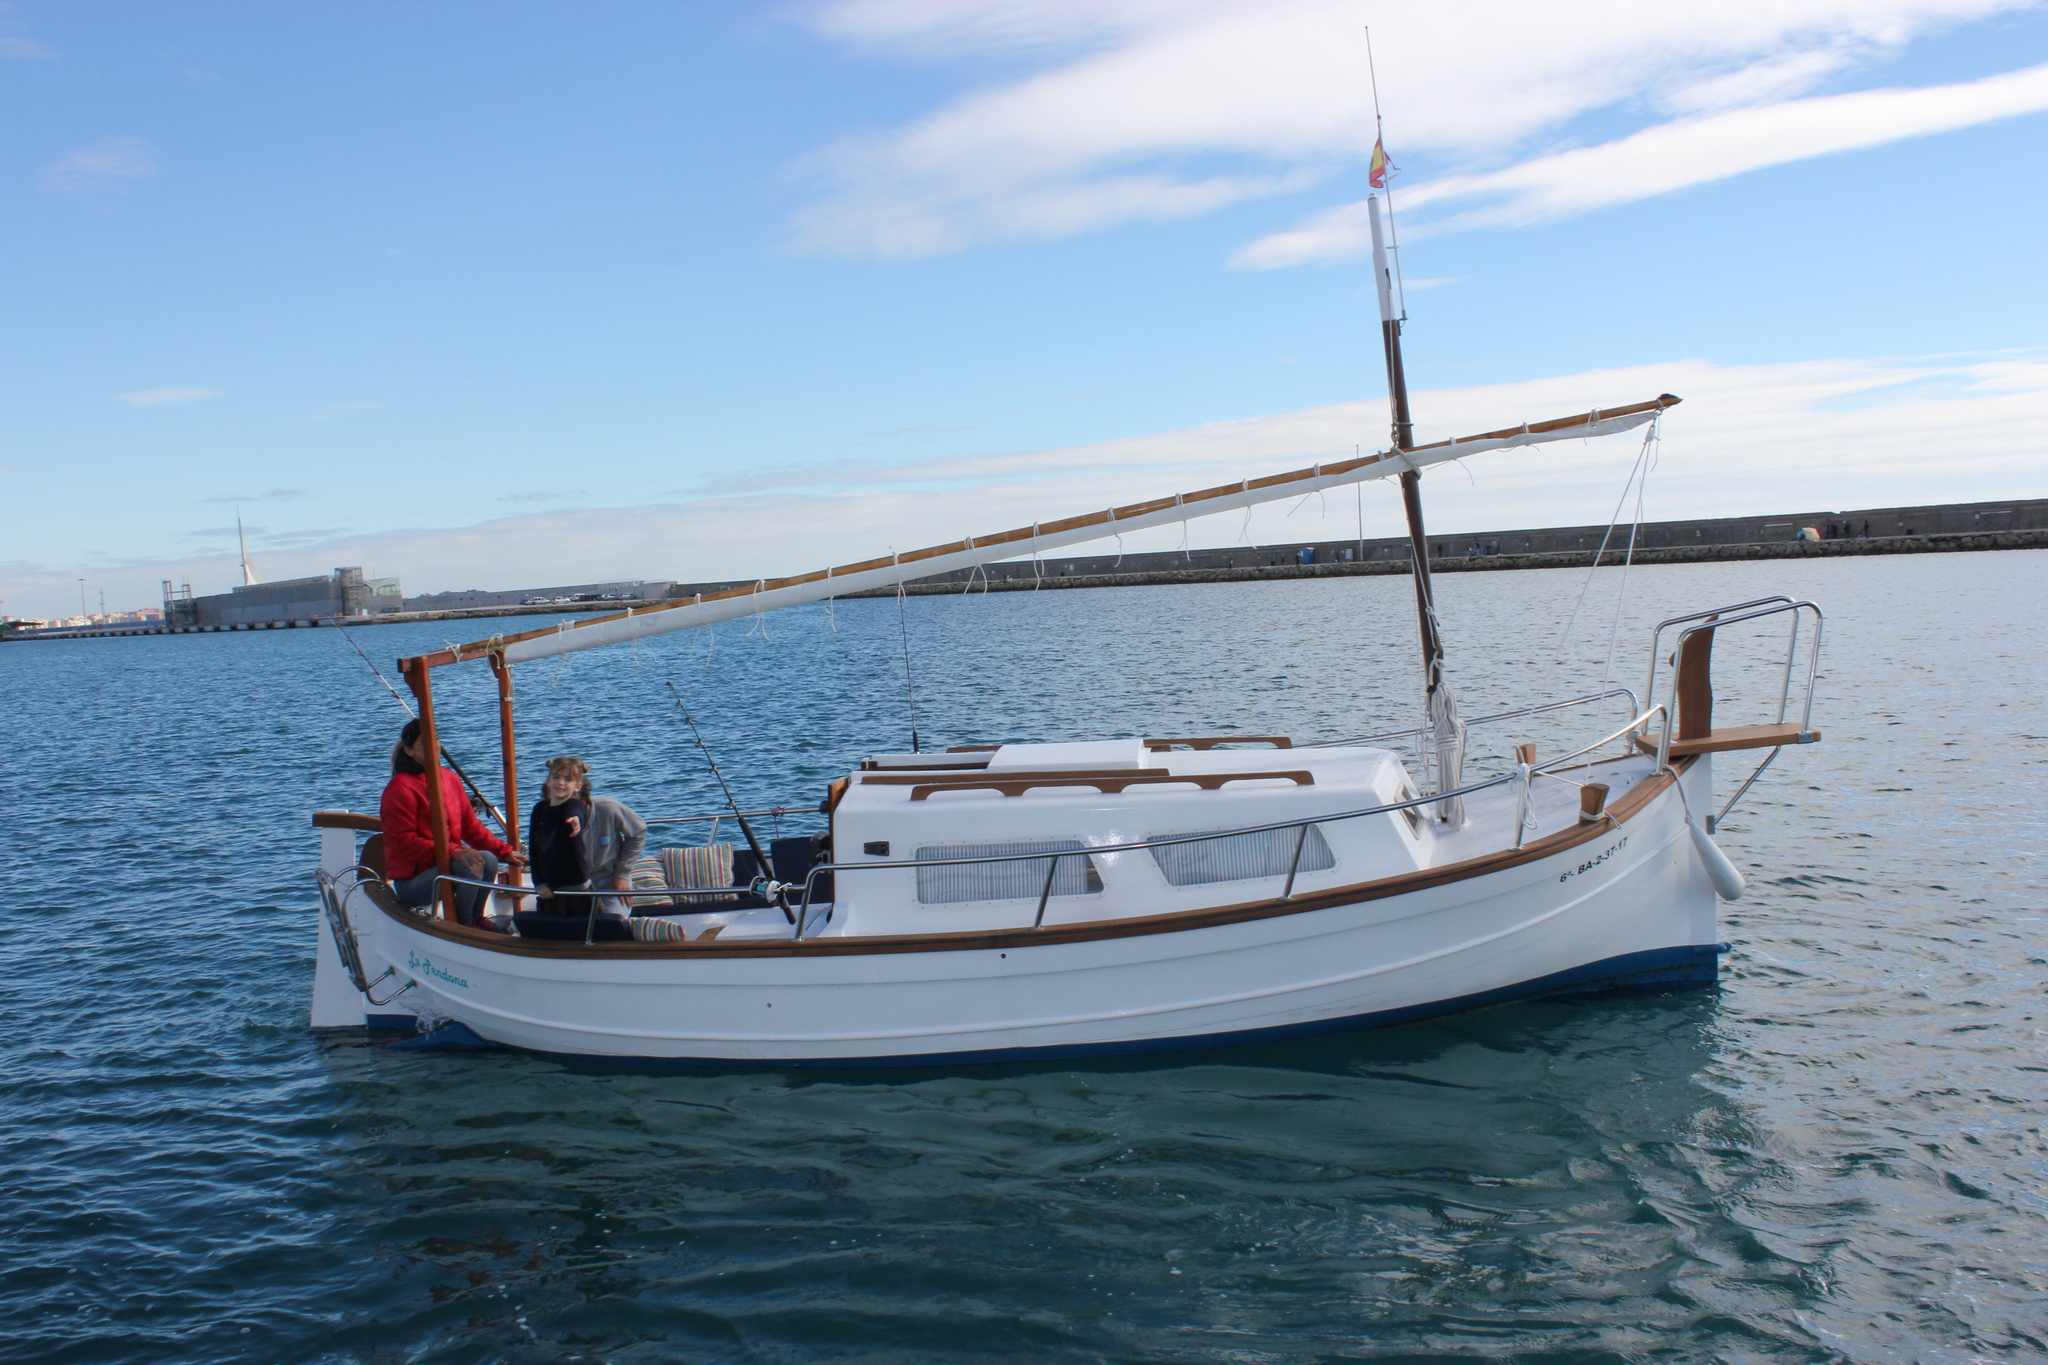 Power boat FOR CHARTER, year 1985 brand Menorquin and model 35, available in Marina Deportiva de Alicante Alicante Alicante España